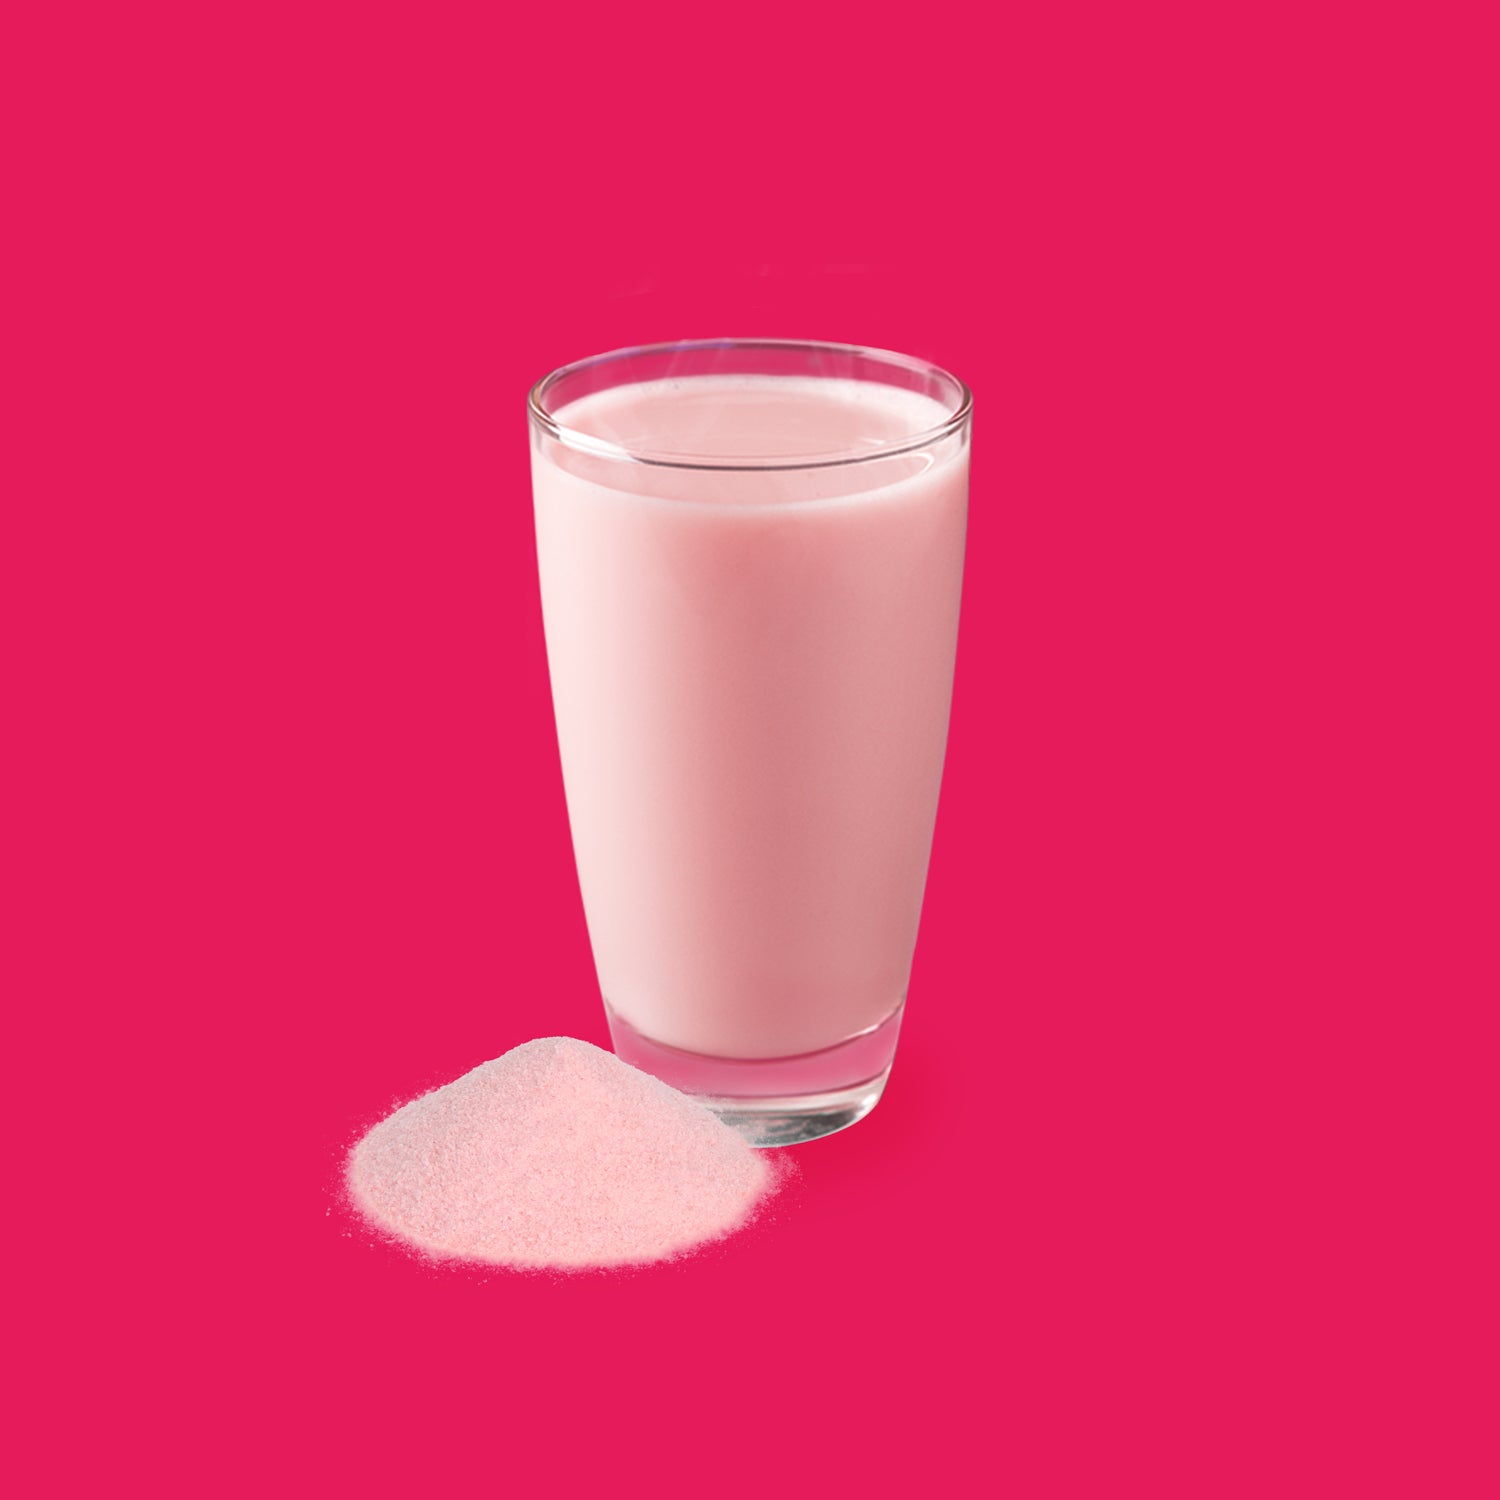 Drinkmich Hafermilchpulver mit Erdbeergeschmack kleiner Pulverhafen vor Glas mit rosafarbener Erdbeerhafermilch vor rosanem hintergrund